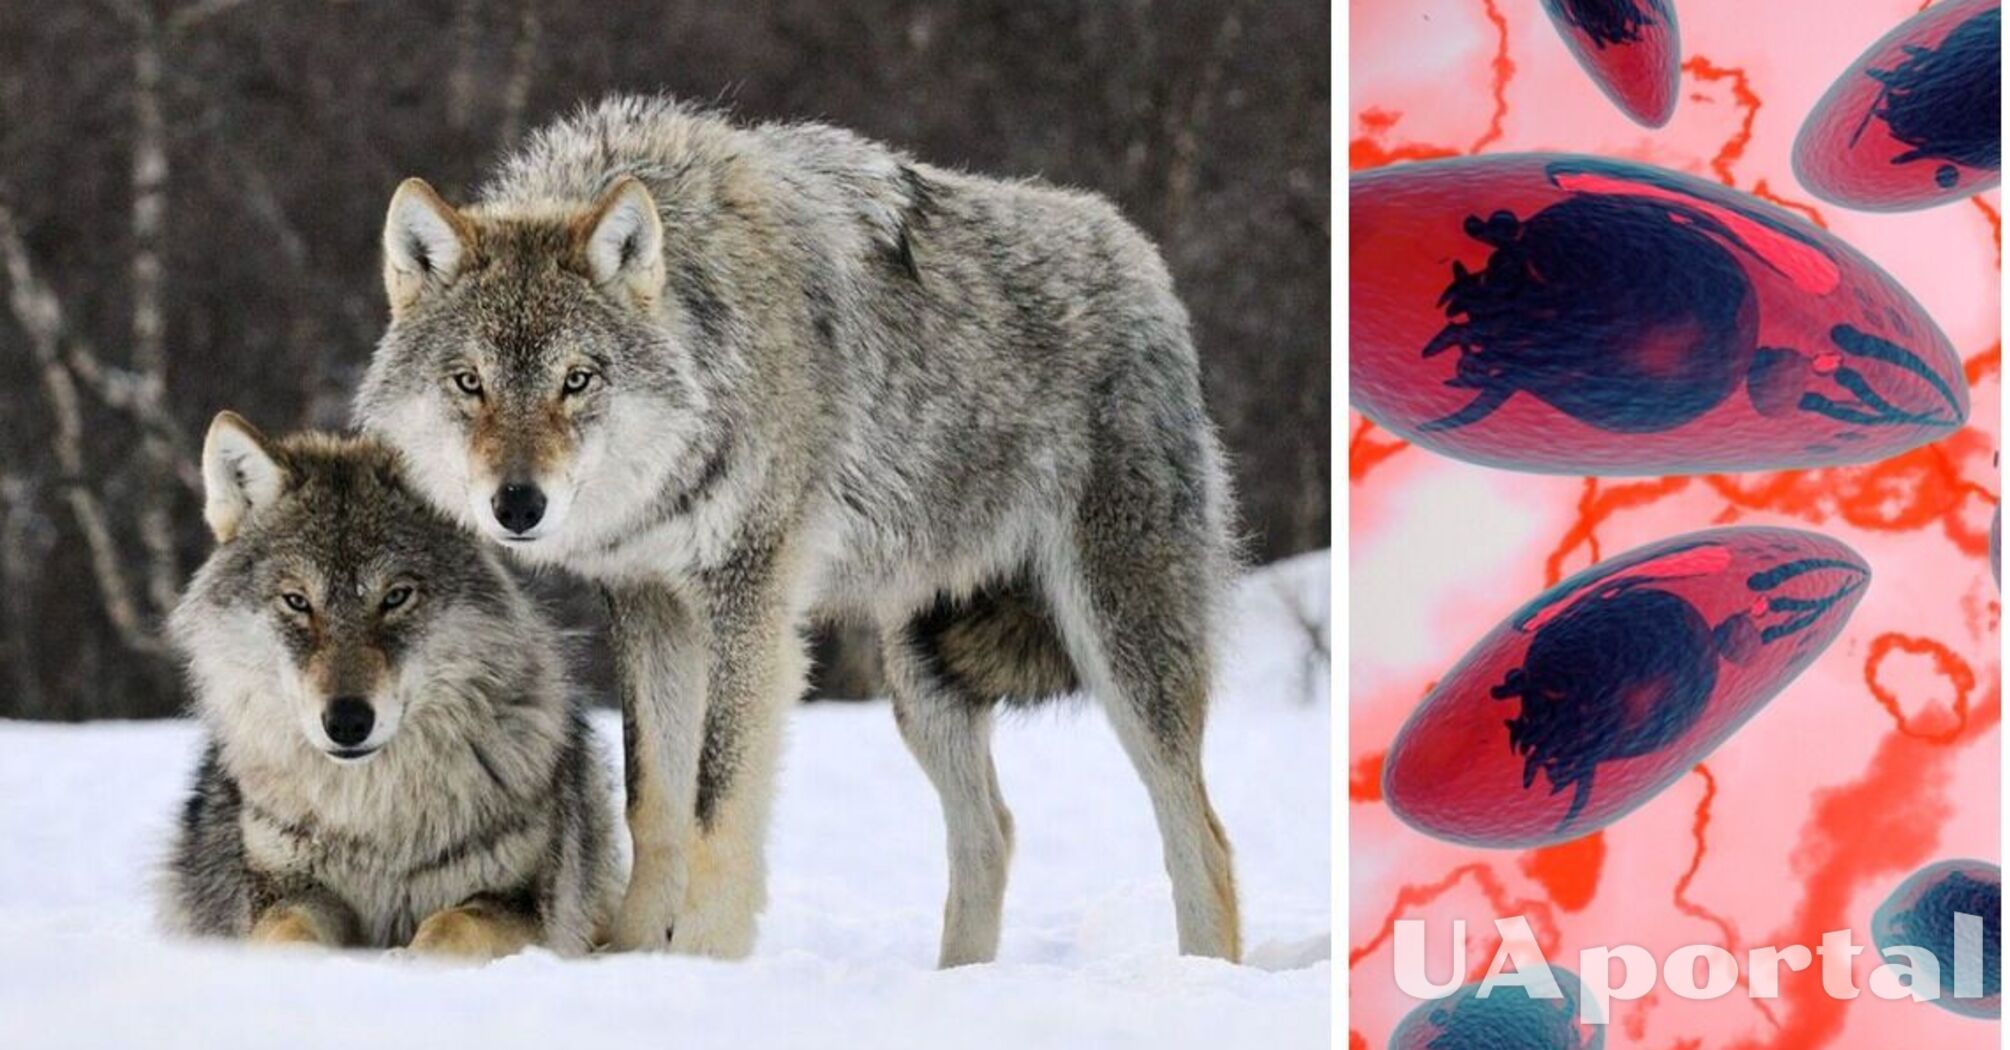 Ученые обнаружили, что мозговые паразиты могут сделать волков вожаками зграи